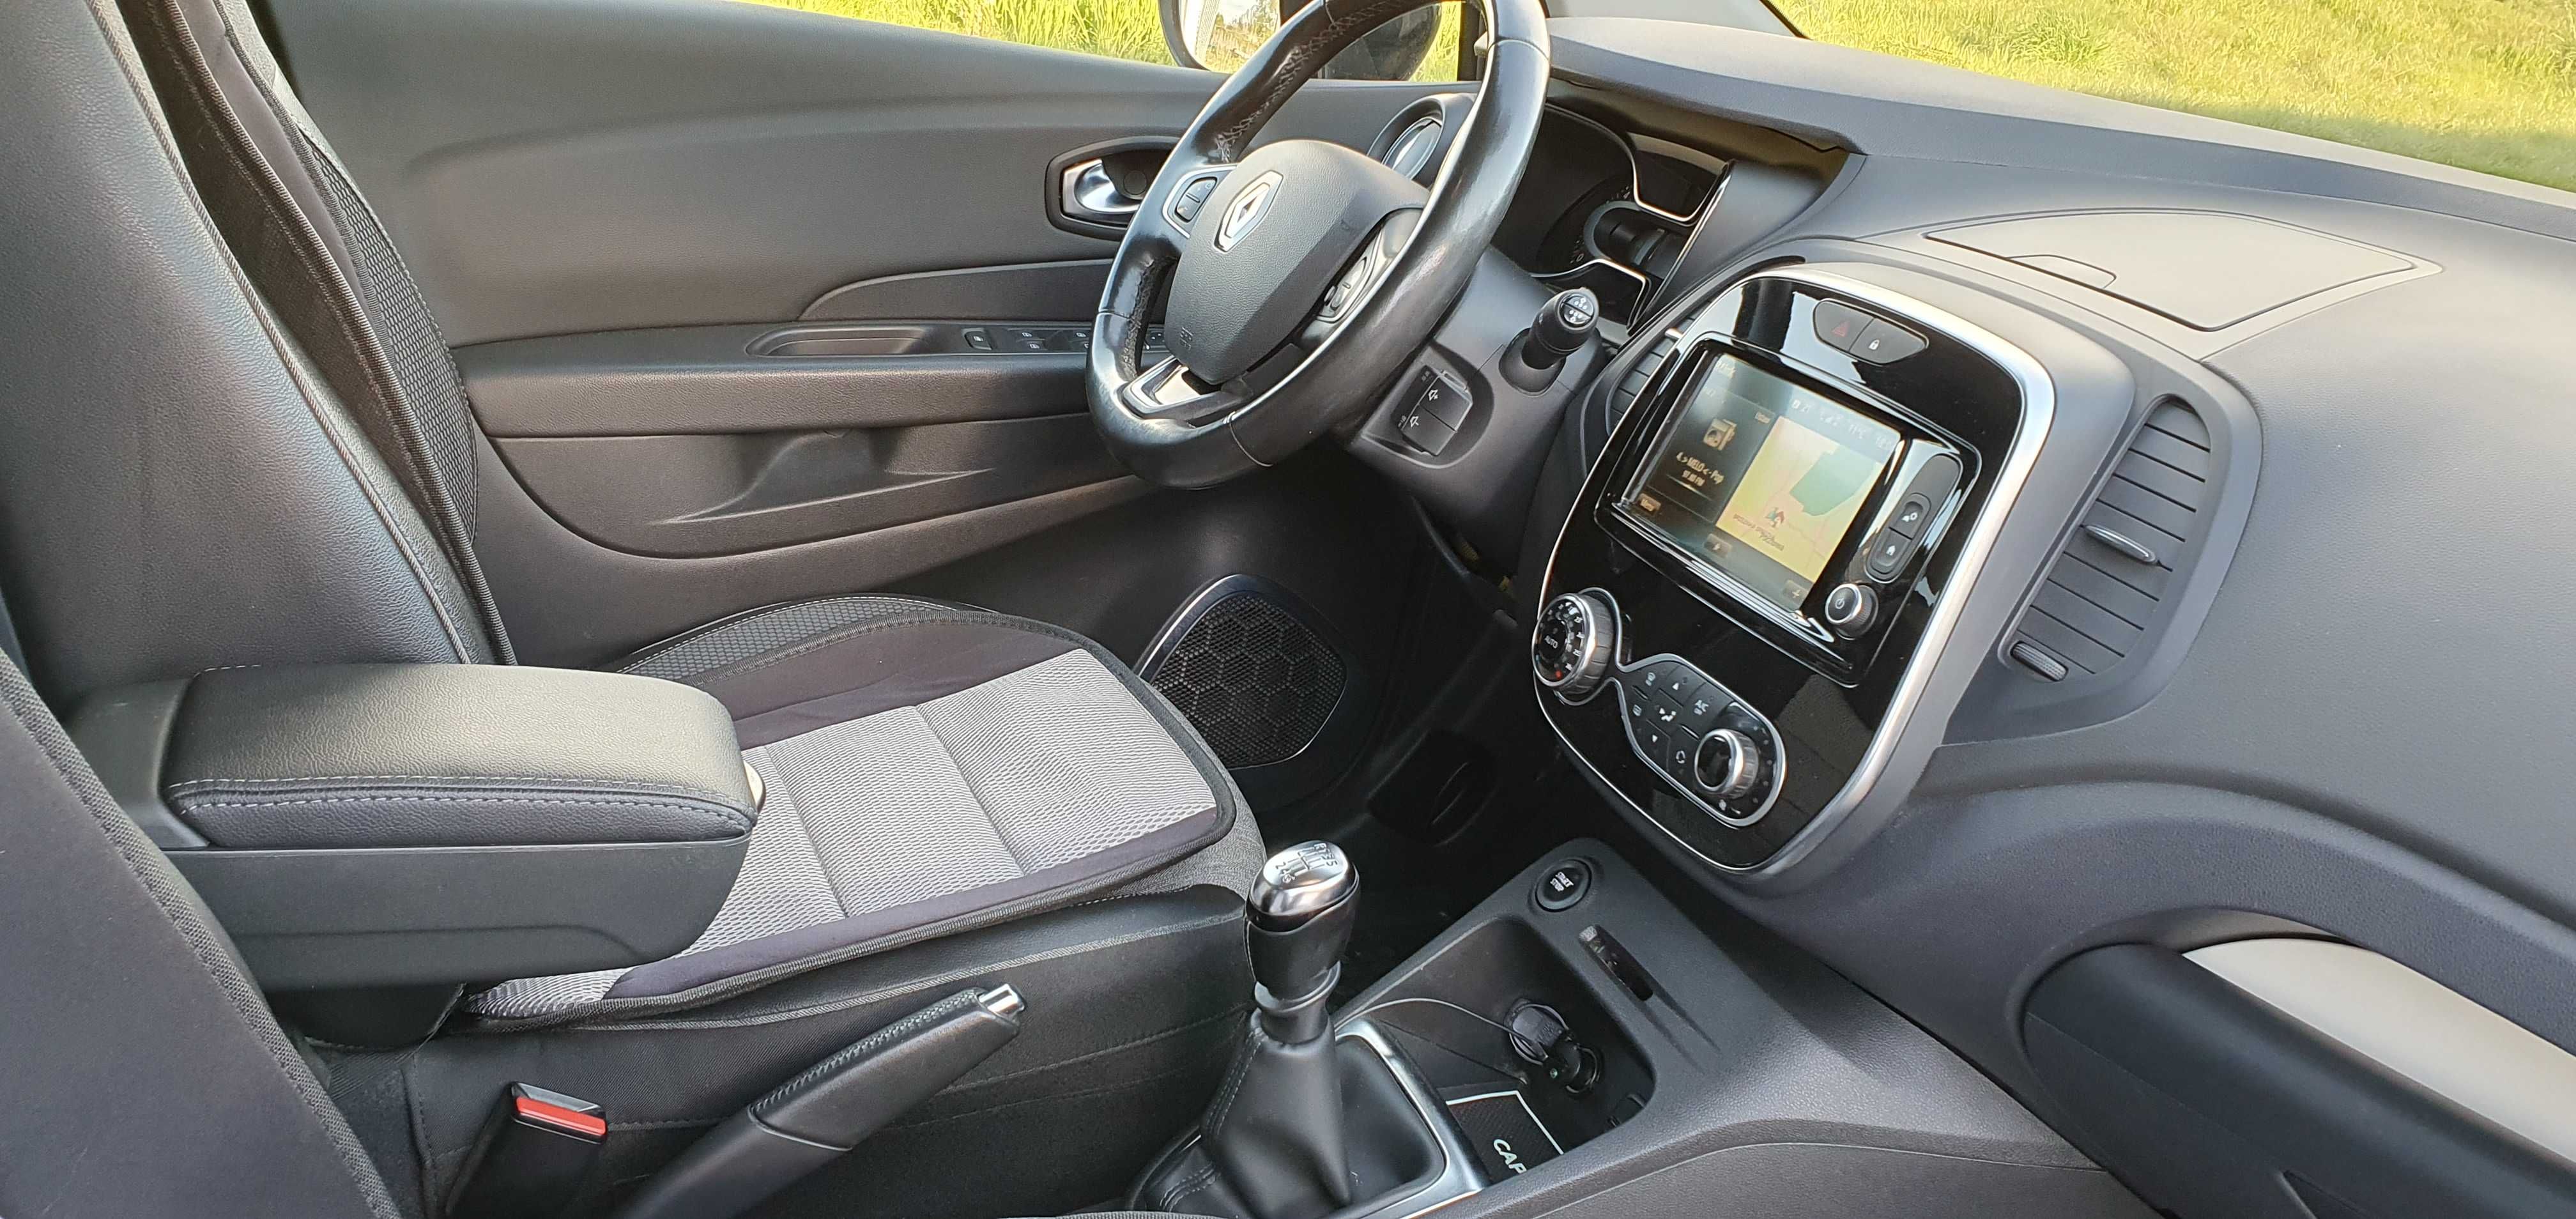 Renault Captur 2017 XMODE 1,2 TCE po lifcie, Salon PL, ASO